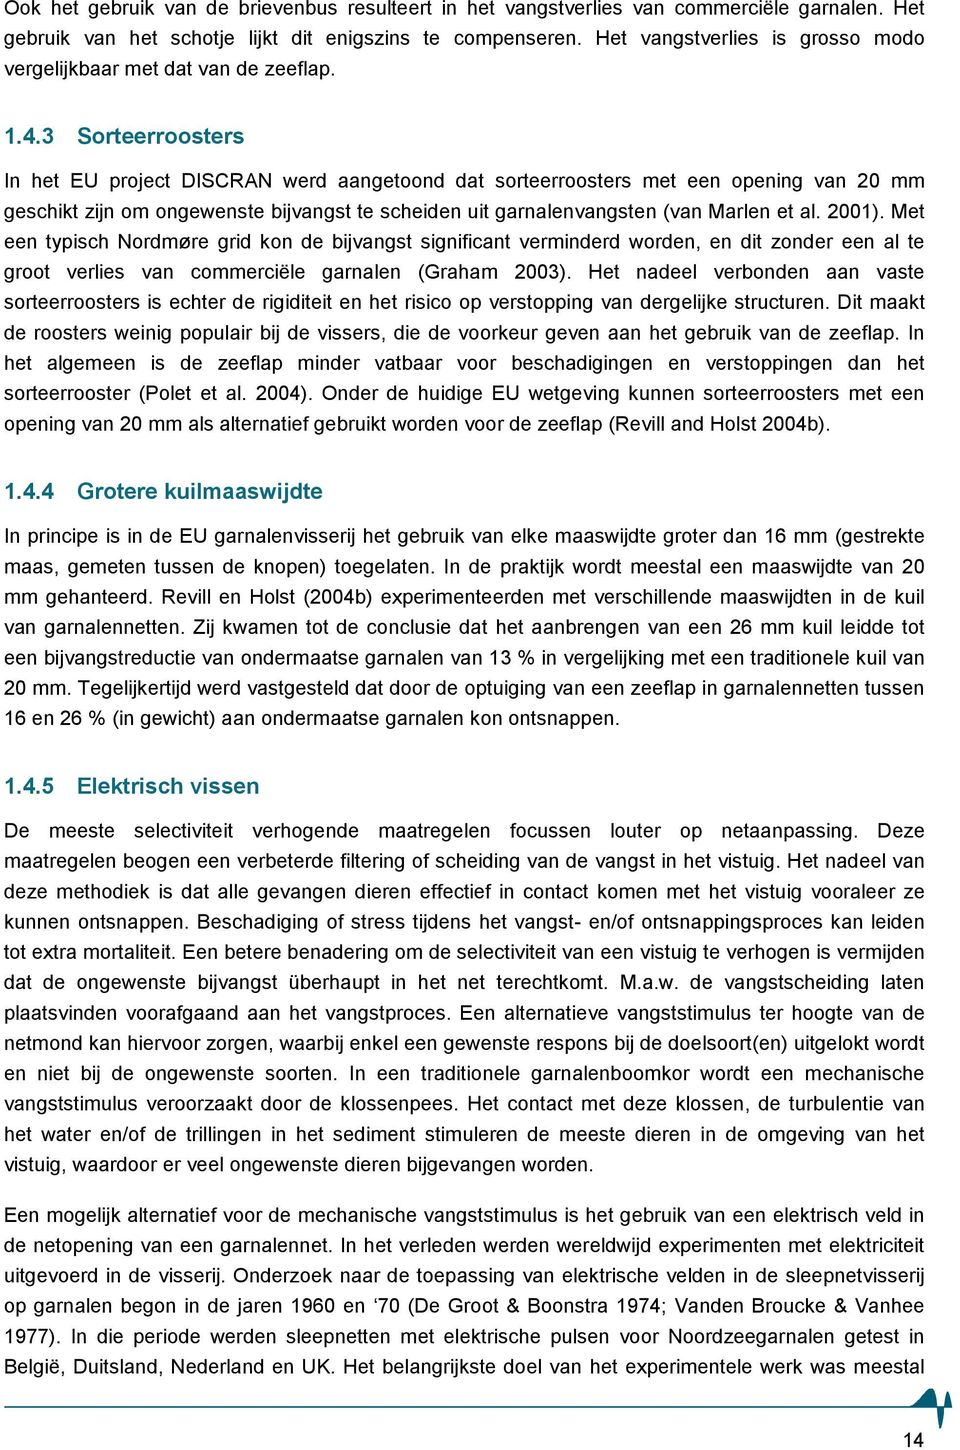 3 Sorteerroosters In het EU project DISCR werd aangetoond dat sorteerroosters met een opening van 20 mm geschikt zijn om ongewenste bijvangst te scheiden uit garnalenvangsten (van Marlen et al. 2001).